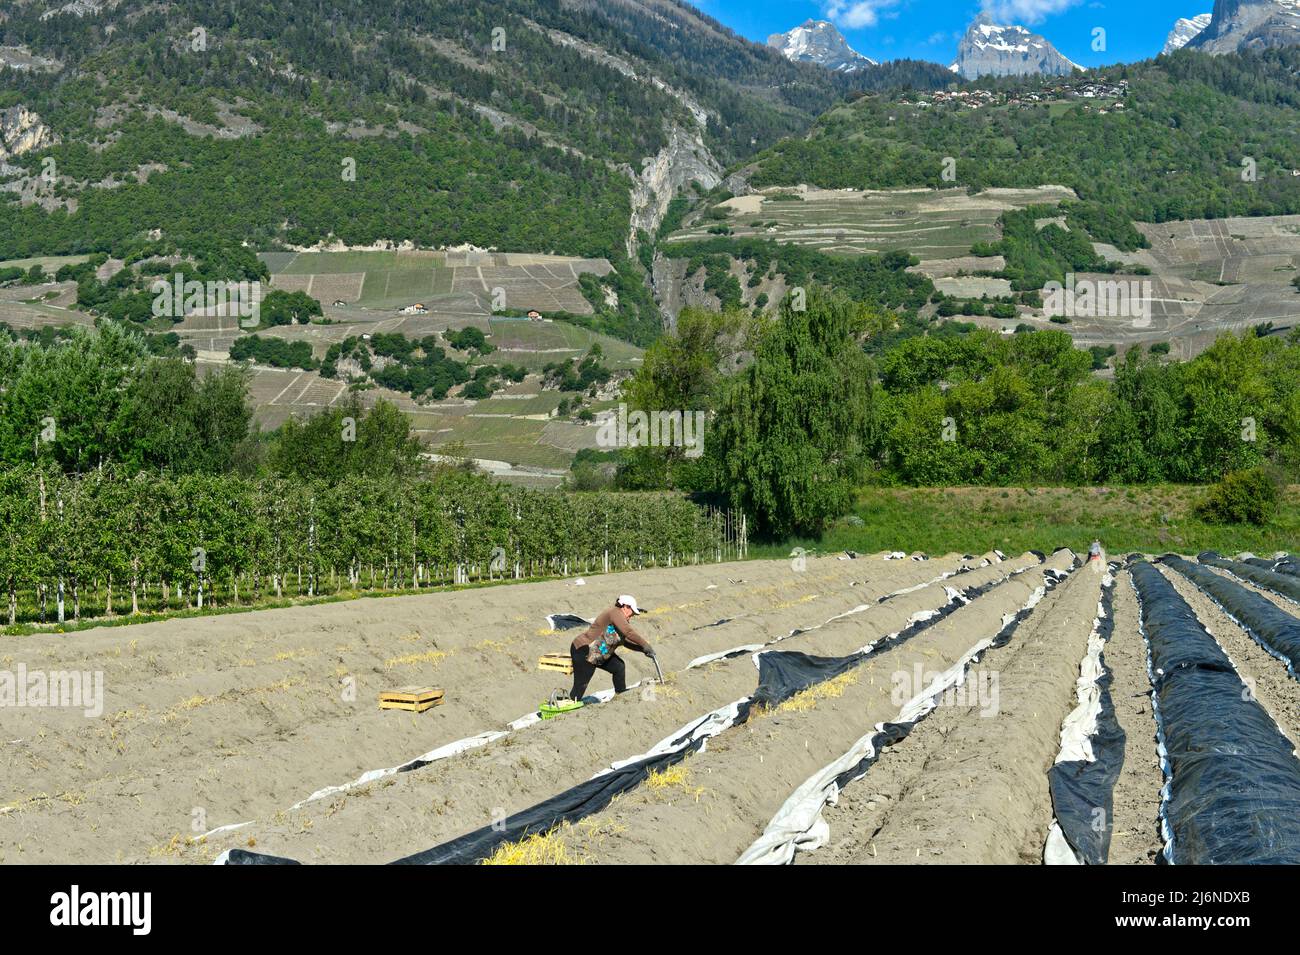 Récolteuses récoltant des asperges dans un champ de l'agro-industrie de Philfruits dans la vallée du Rhône, Riddes, Valais, Suisse Banque D'Images